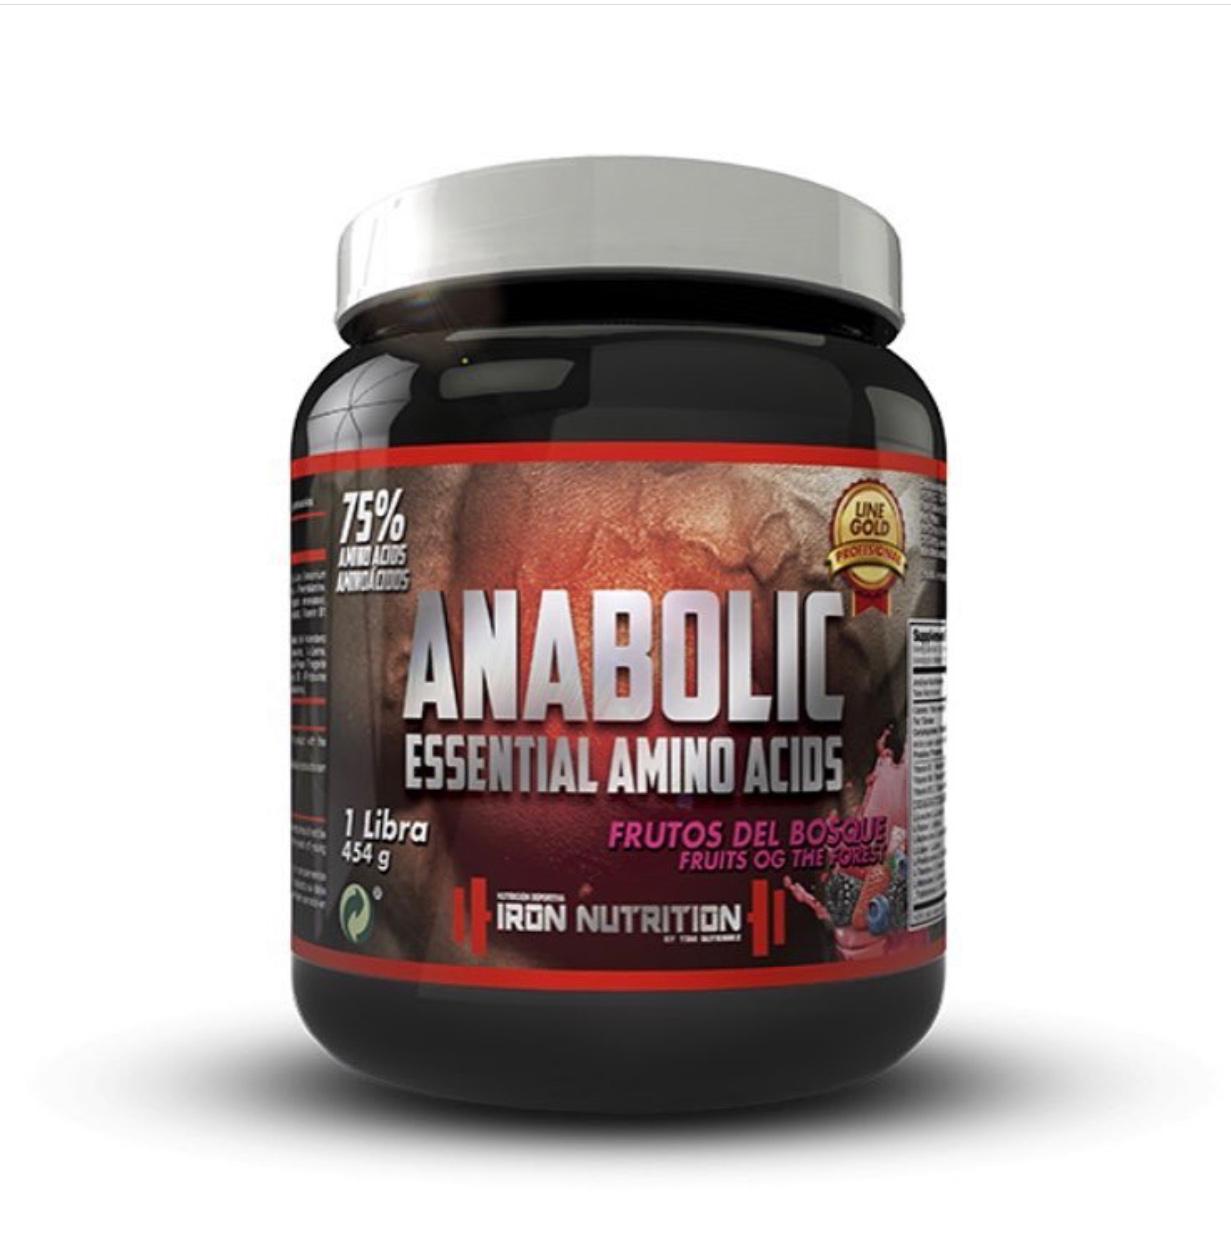 Essential amino acids anabolic frutos del bosque